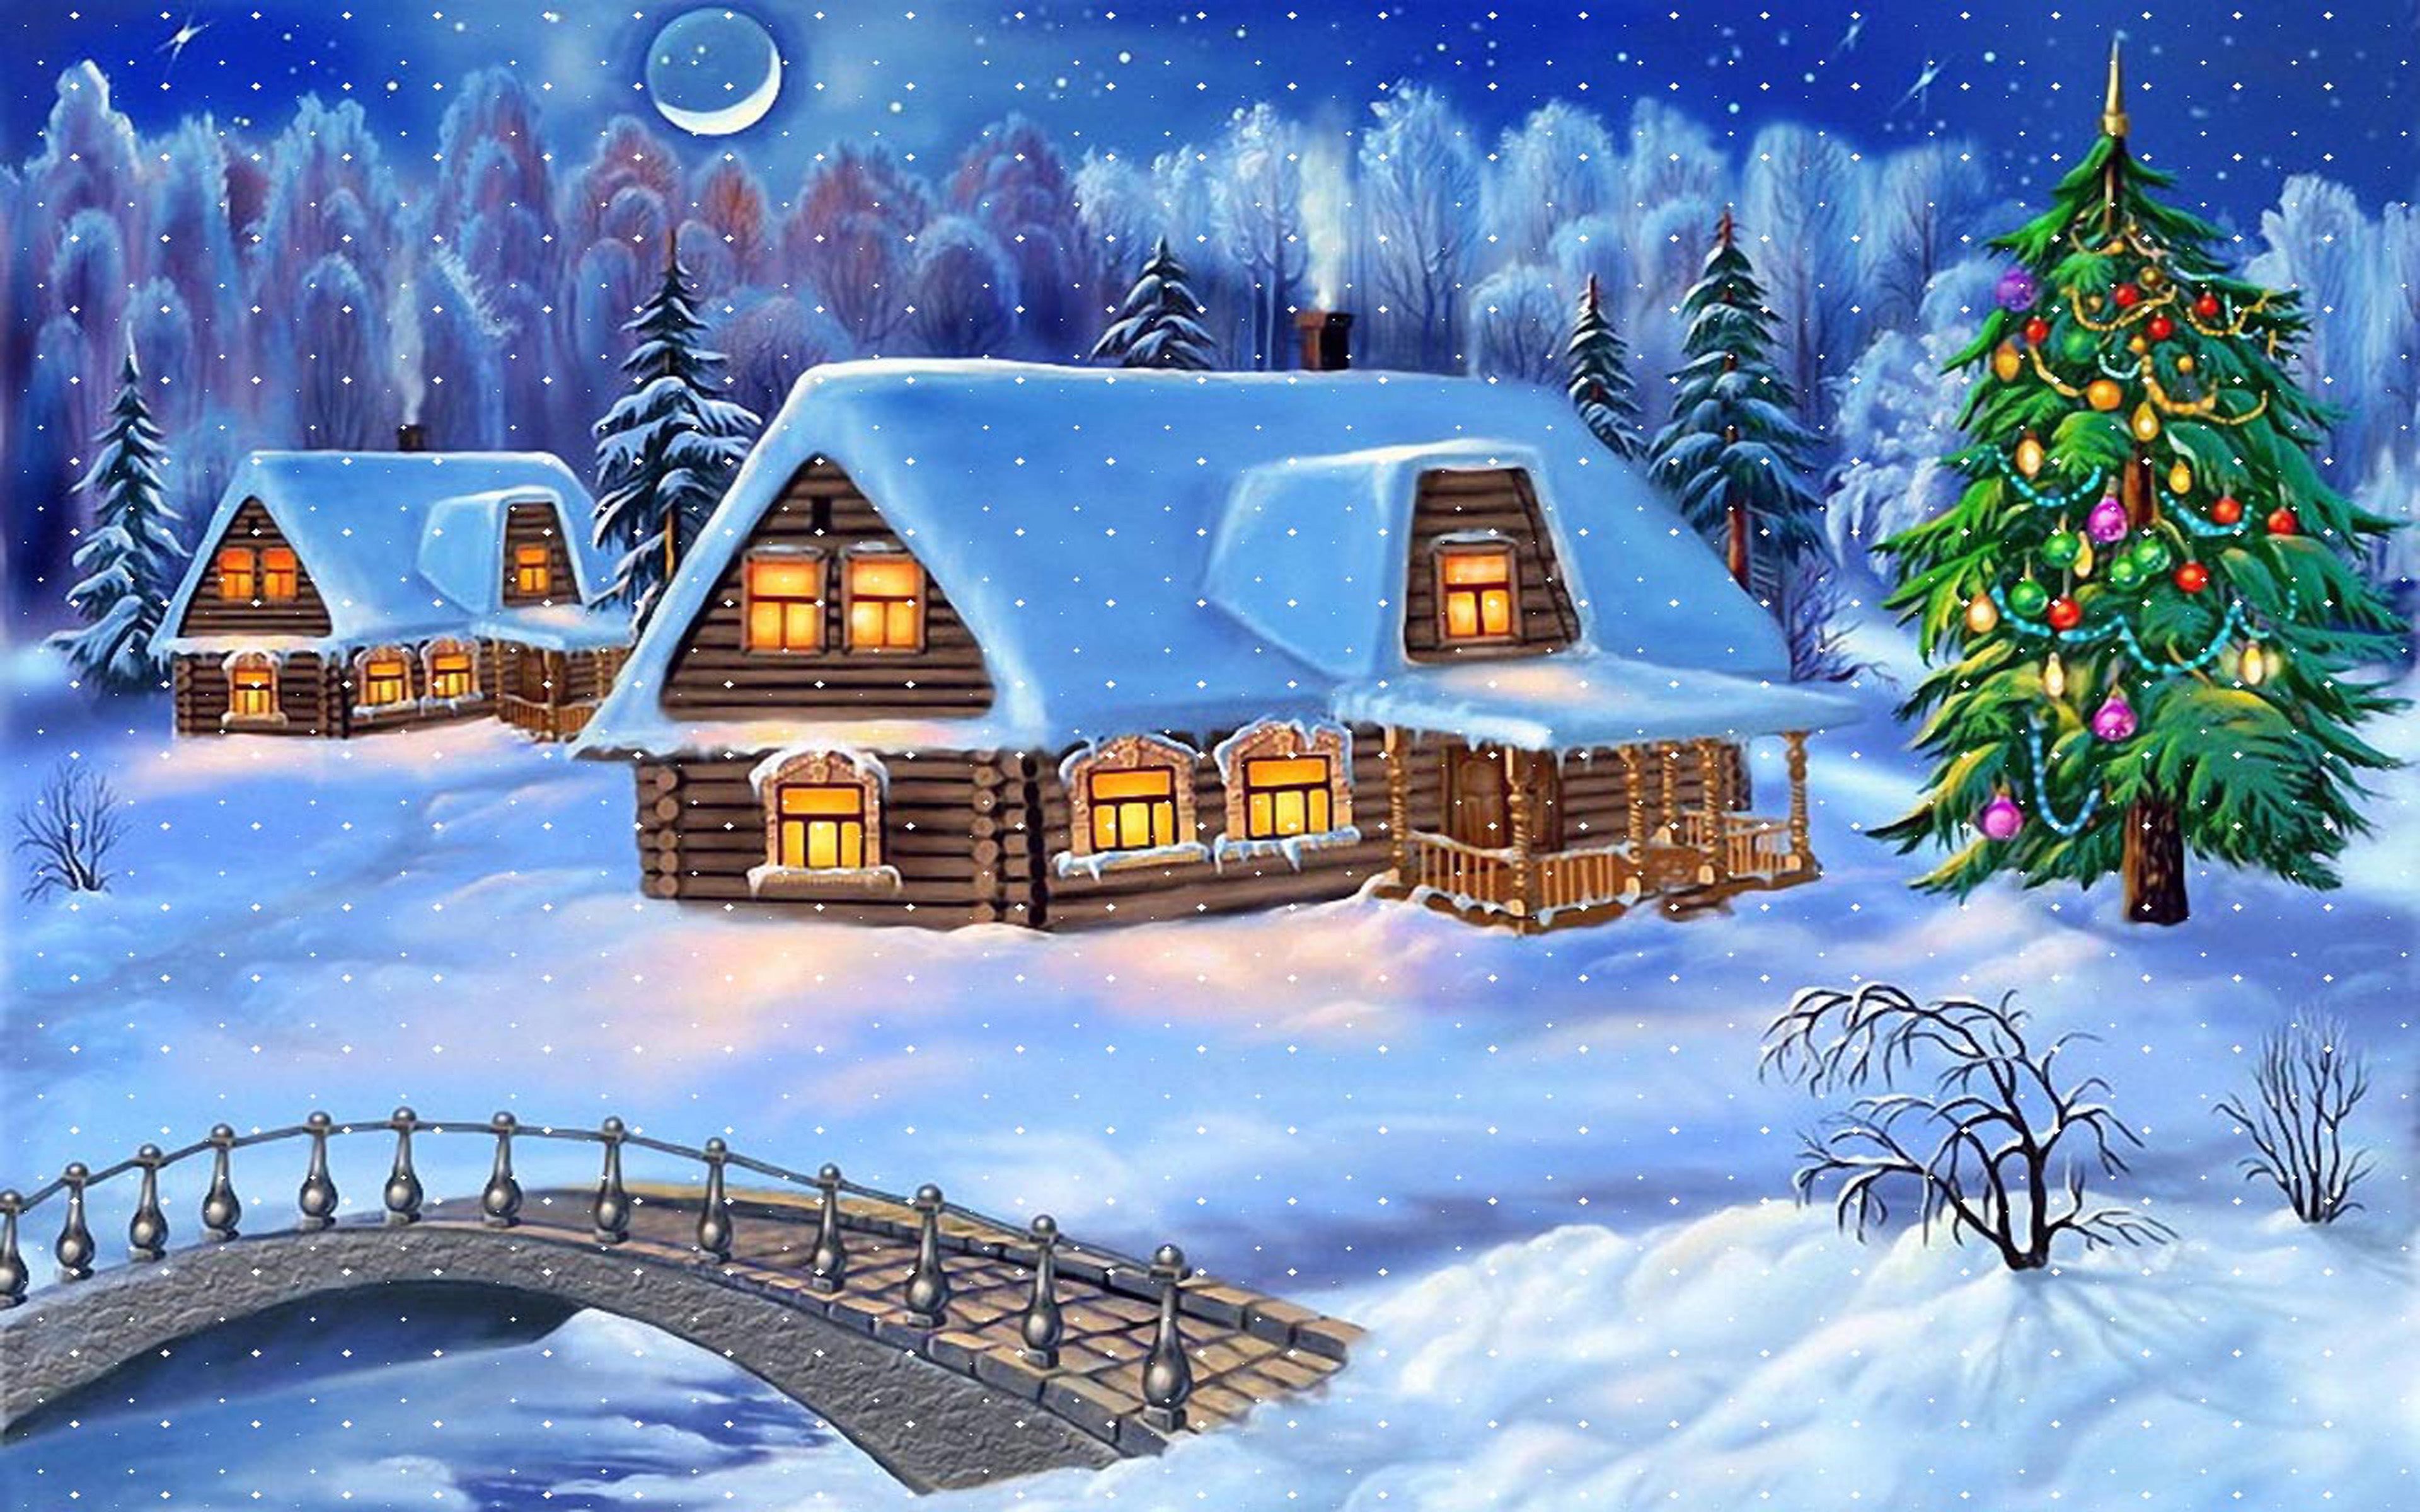 Sfondi Natale 4k.Scarica Sfondi Natale 4k Villaggio Inverno Capodanno Monitor Con Risoluzione 3840x2400 Immagini Sul Desktop